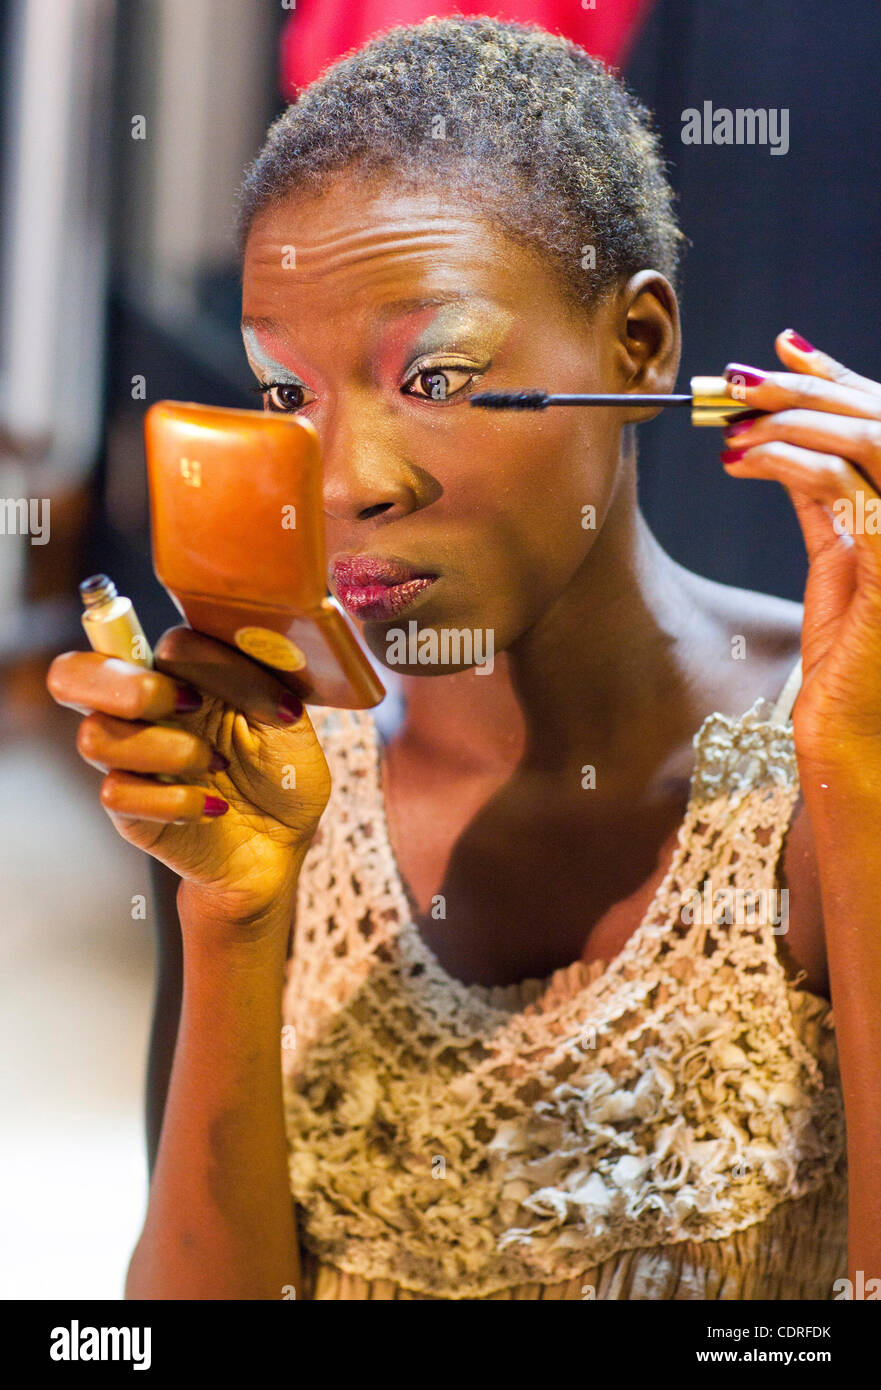 07 juillet 2011 - Dakar, Sénégal - modèle sénégalais applique son maquillage Backstage pendant la Semaine de la mode de Dakar 2011. (Crédit Image : Banque D'Images